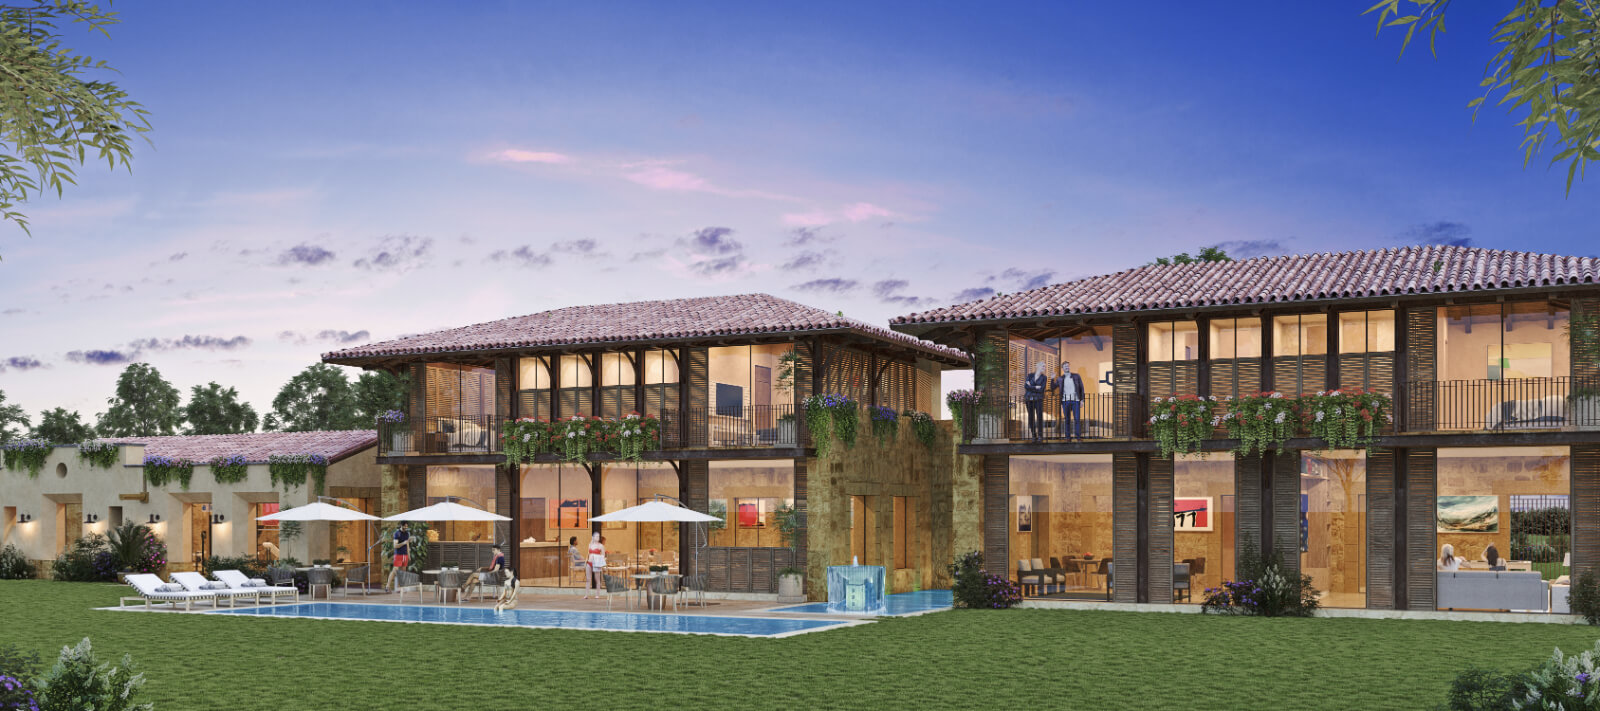 7,482 m2, helipuerto, lago, caballerizas y mas en venta San Miguel de Allende